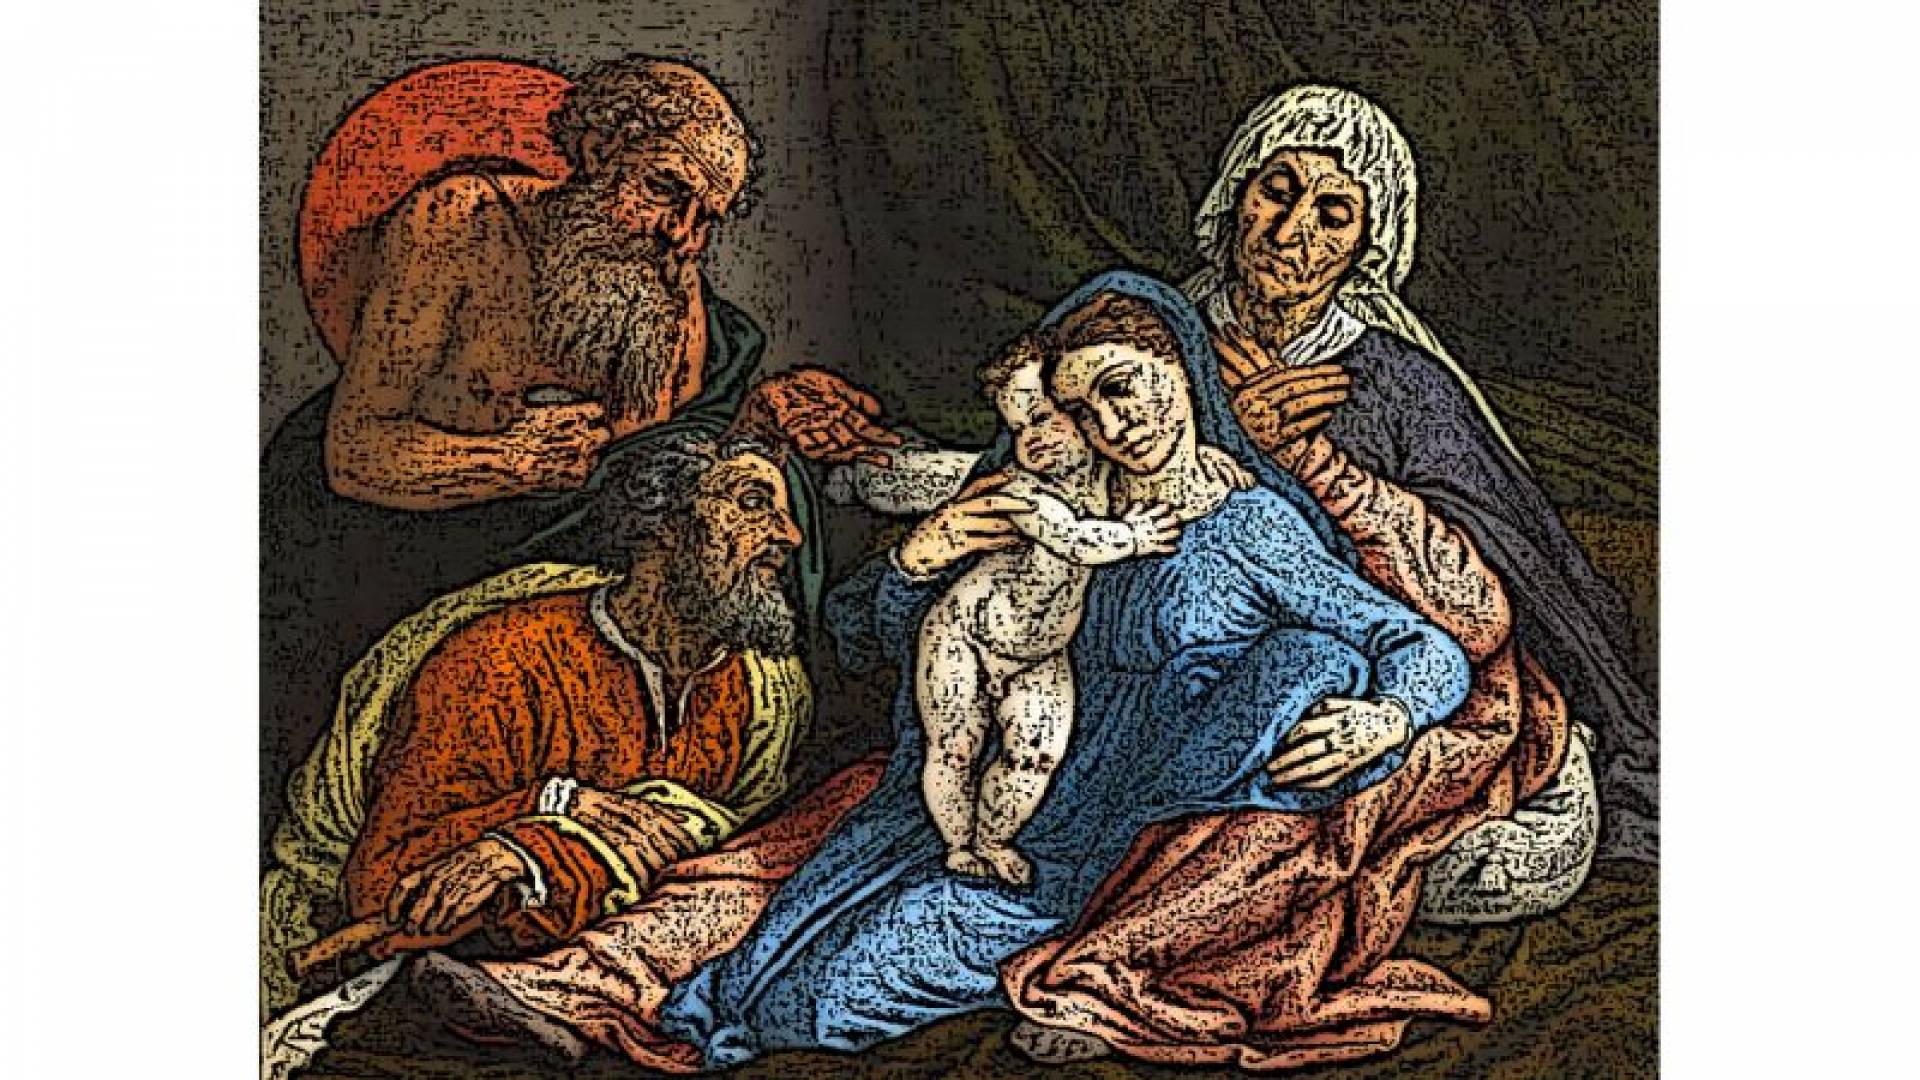 GALERIE DES OFFICES, Lorenzo Lotto-La Sainte Famille Avec Saint Jérome_Salle D19